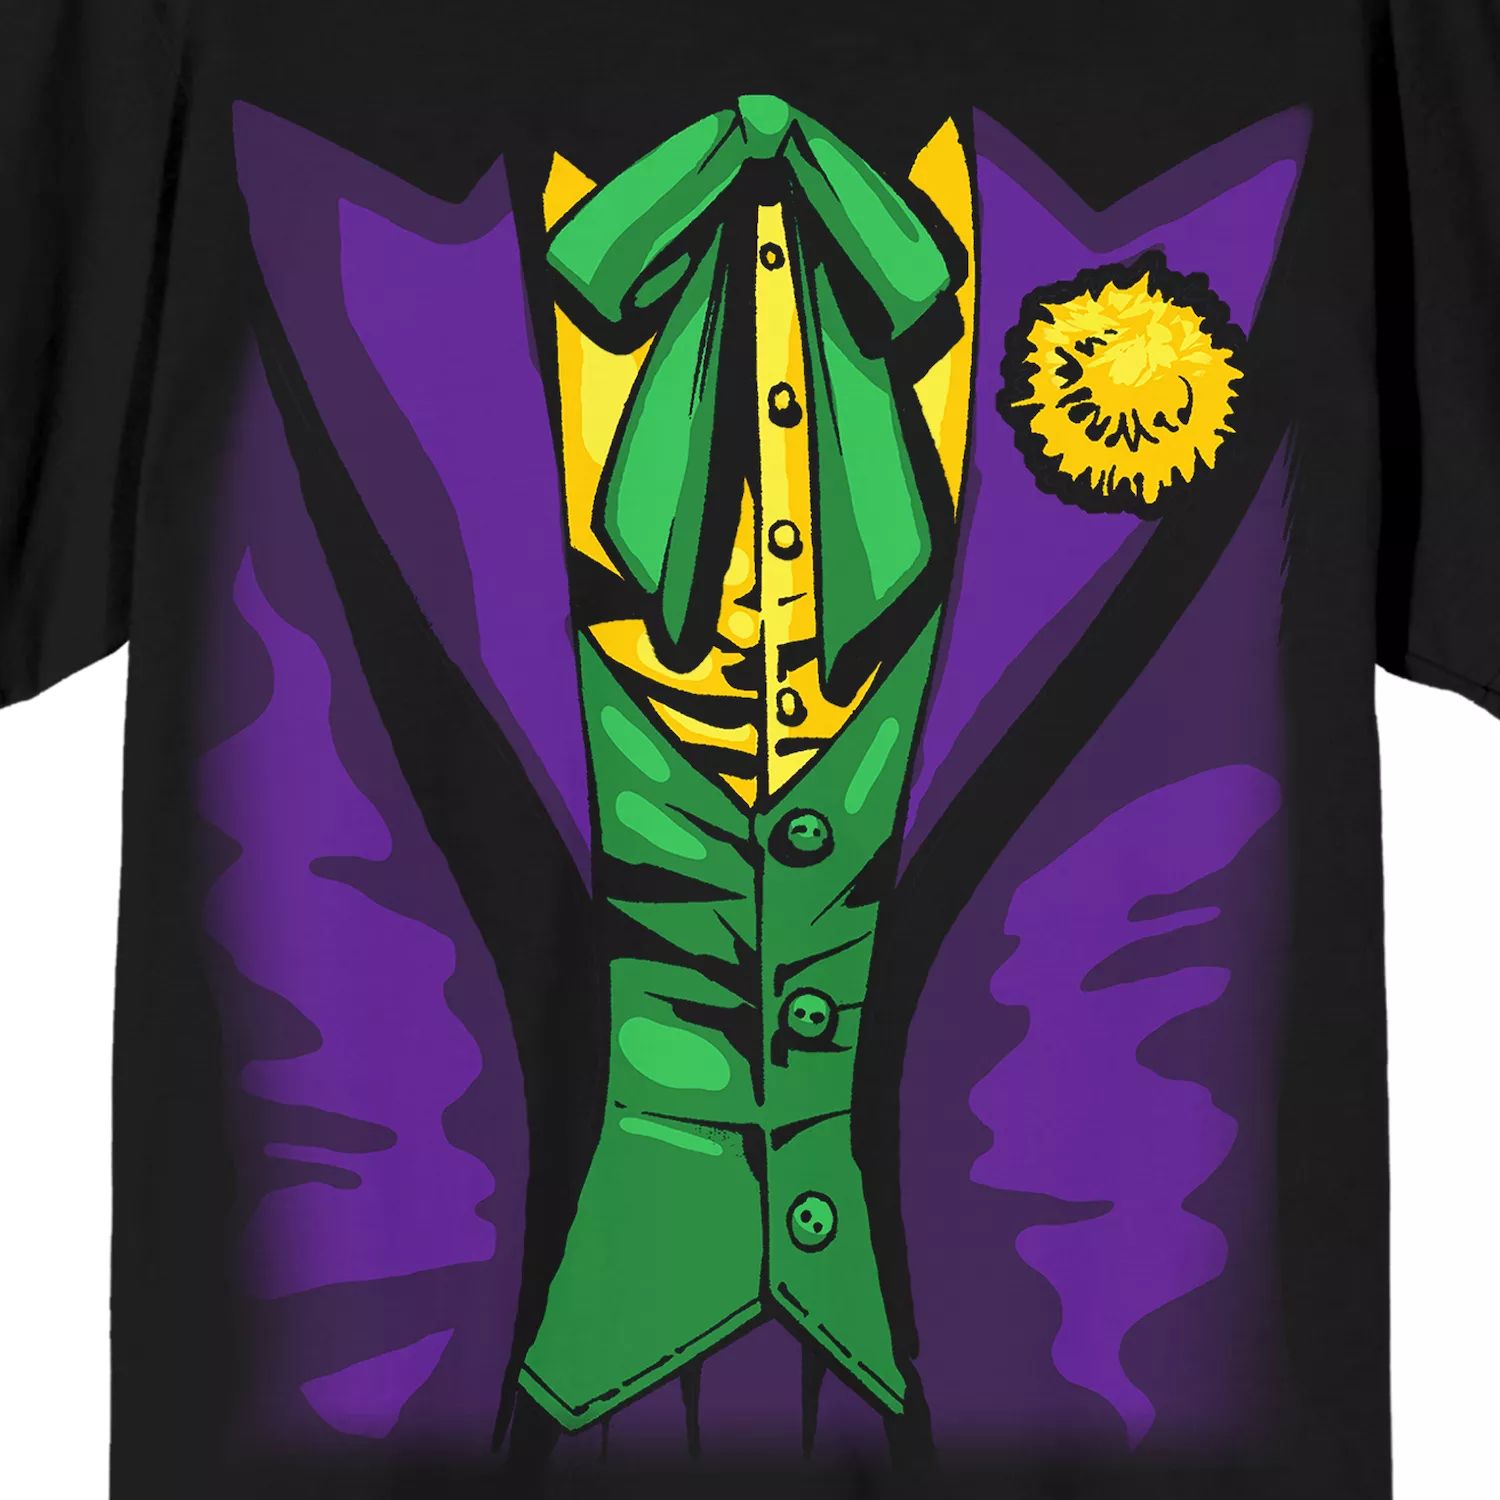 Мужская футболка DC Comics The Joker Licensed Character светильник dc the joker 3d character light